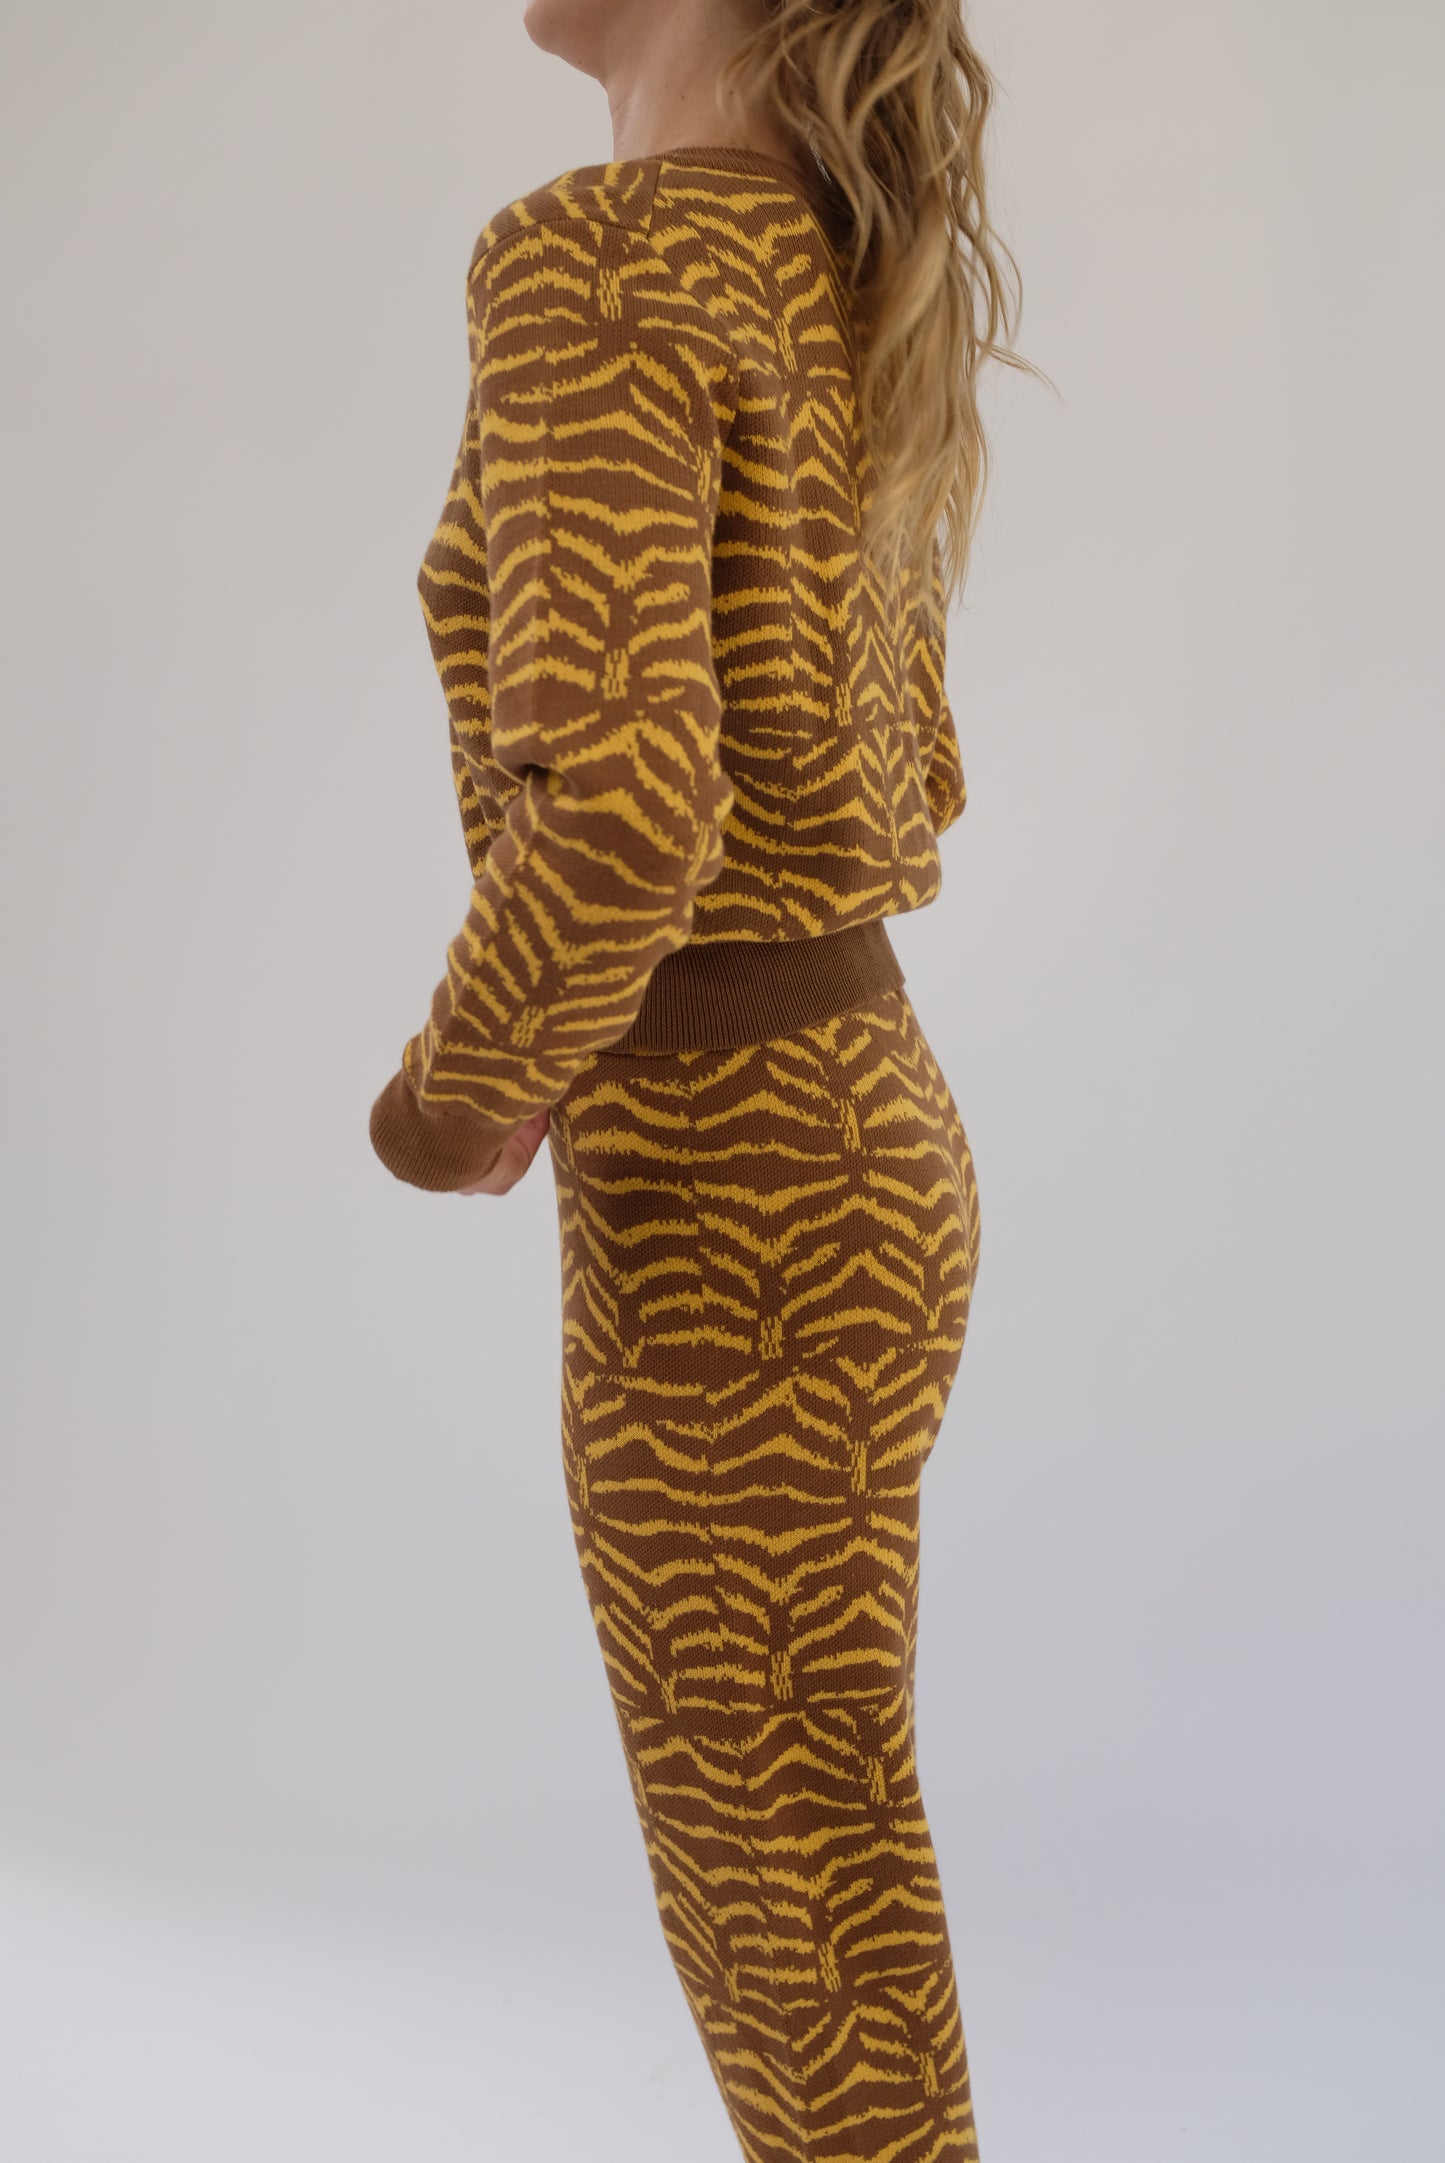 Beklina Jacquard Cardigan Golden Tiger